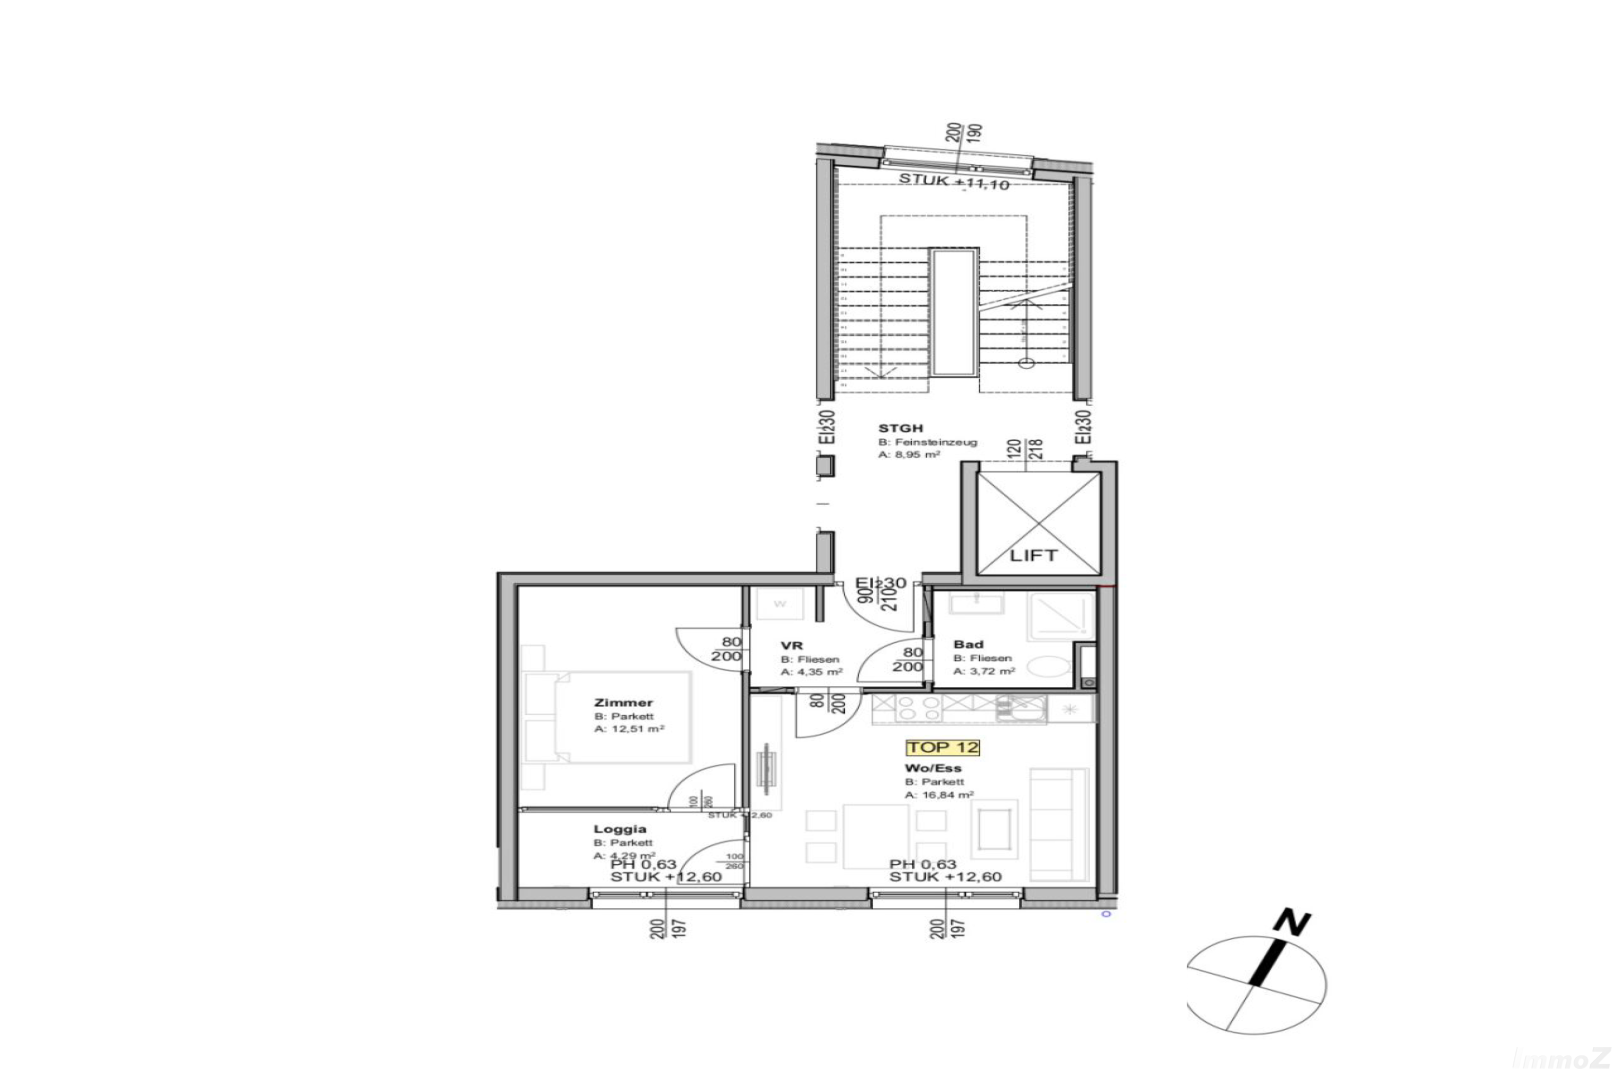 Wohnung zum Mieten: Keplerstraße 76, 8020 Graz - Grundriss